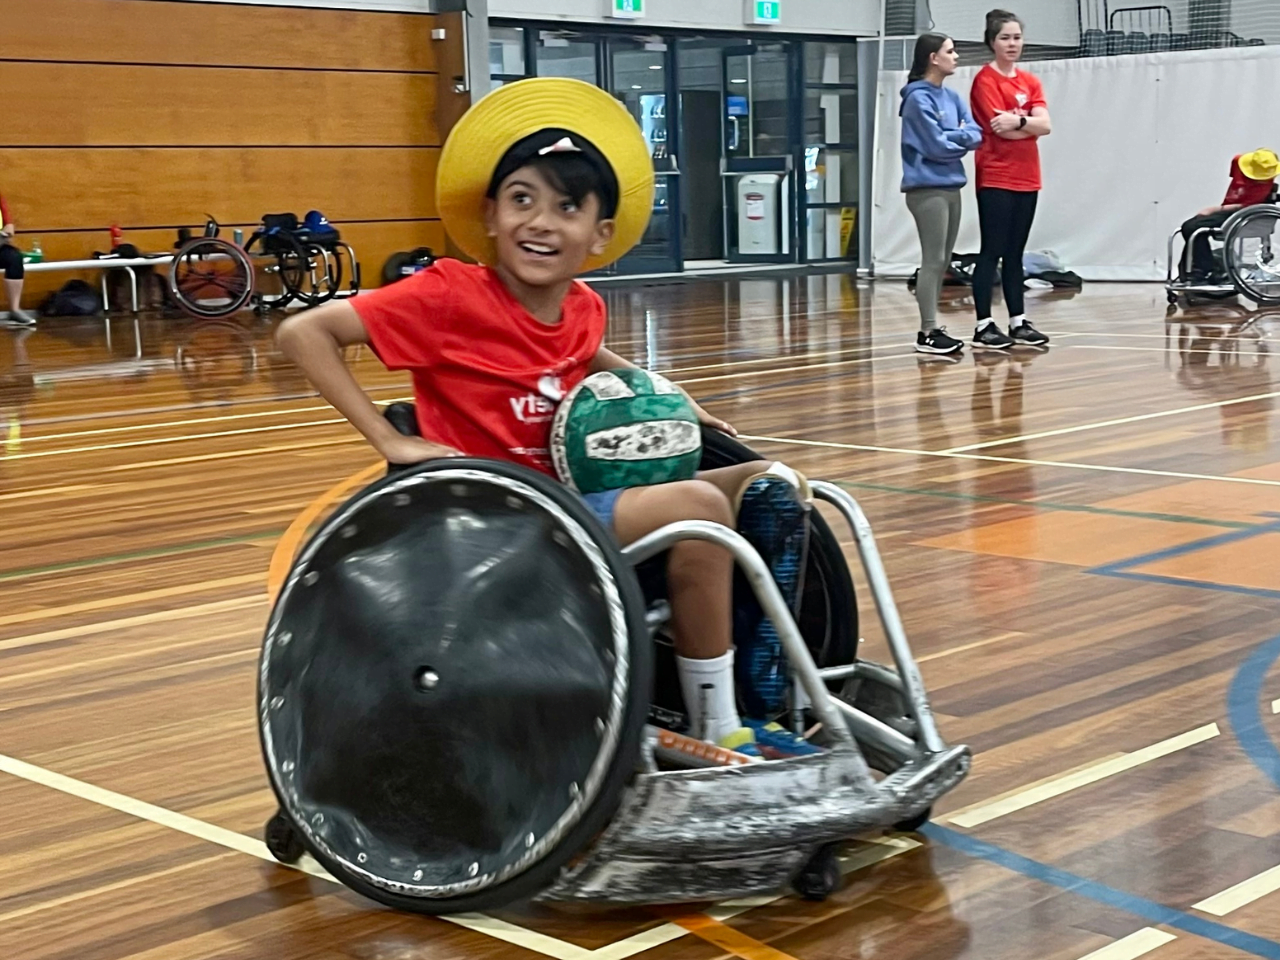 Child enjoying Wheelchair Rughy